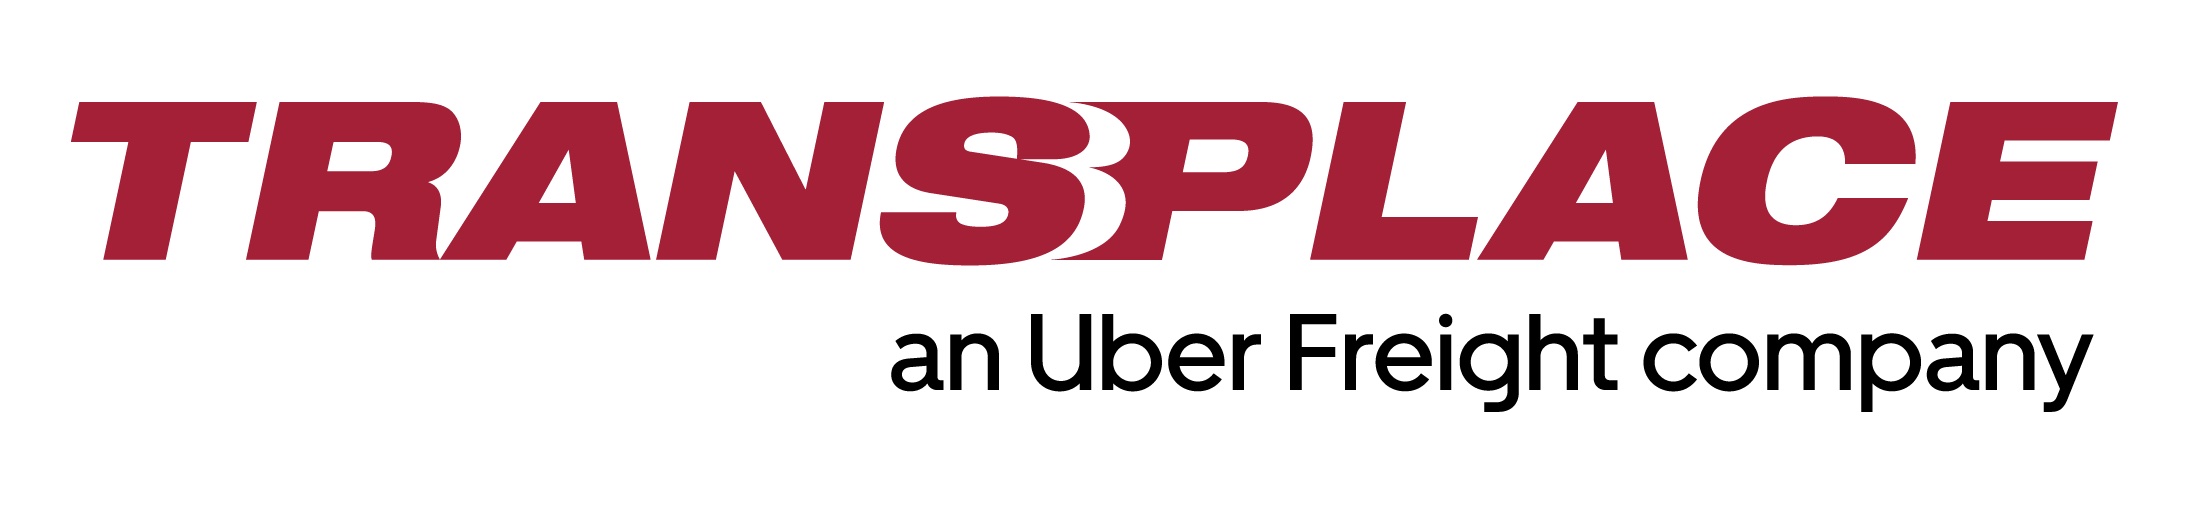 Transplace_Uber-Freight-Logo.jpg